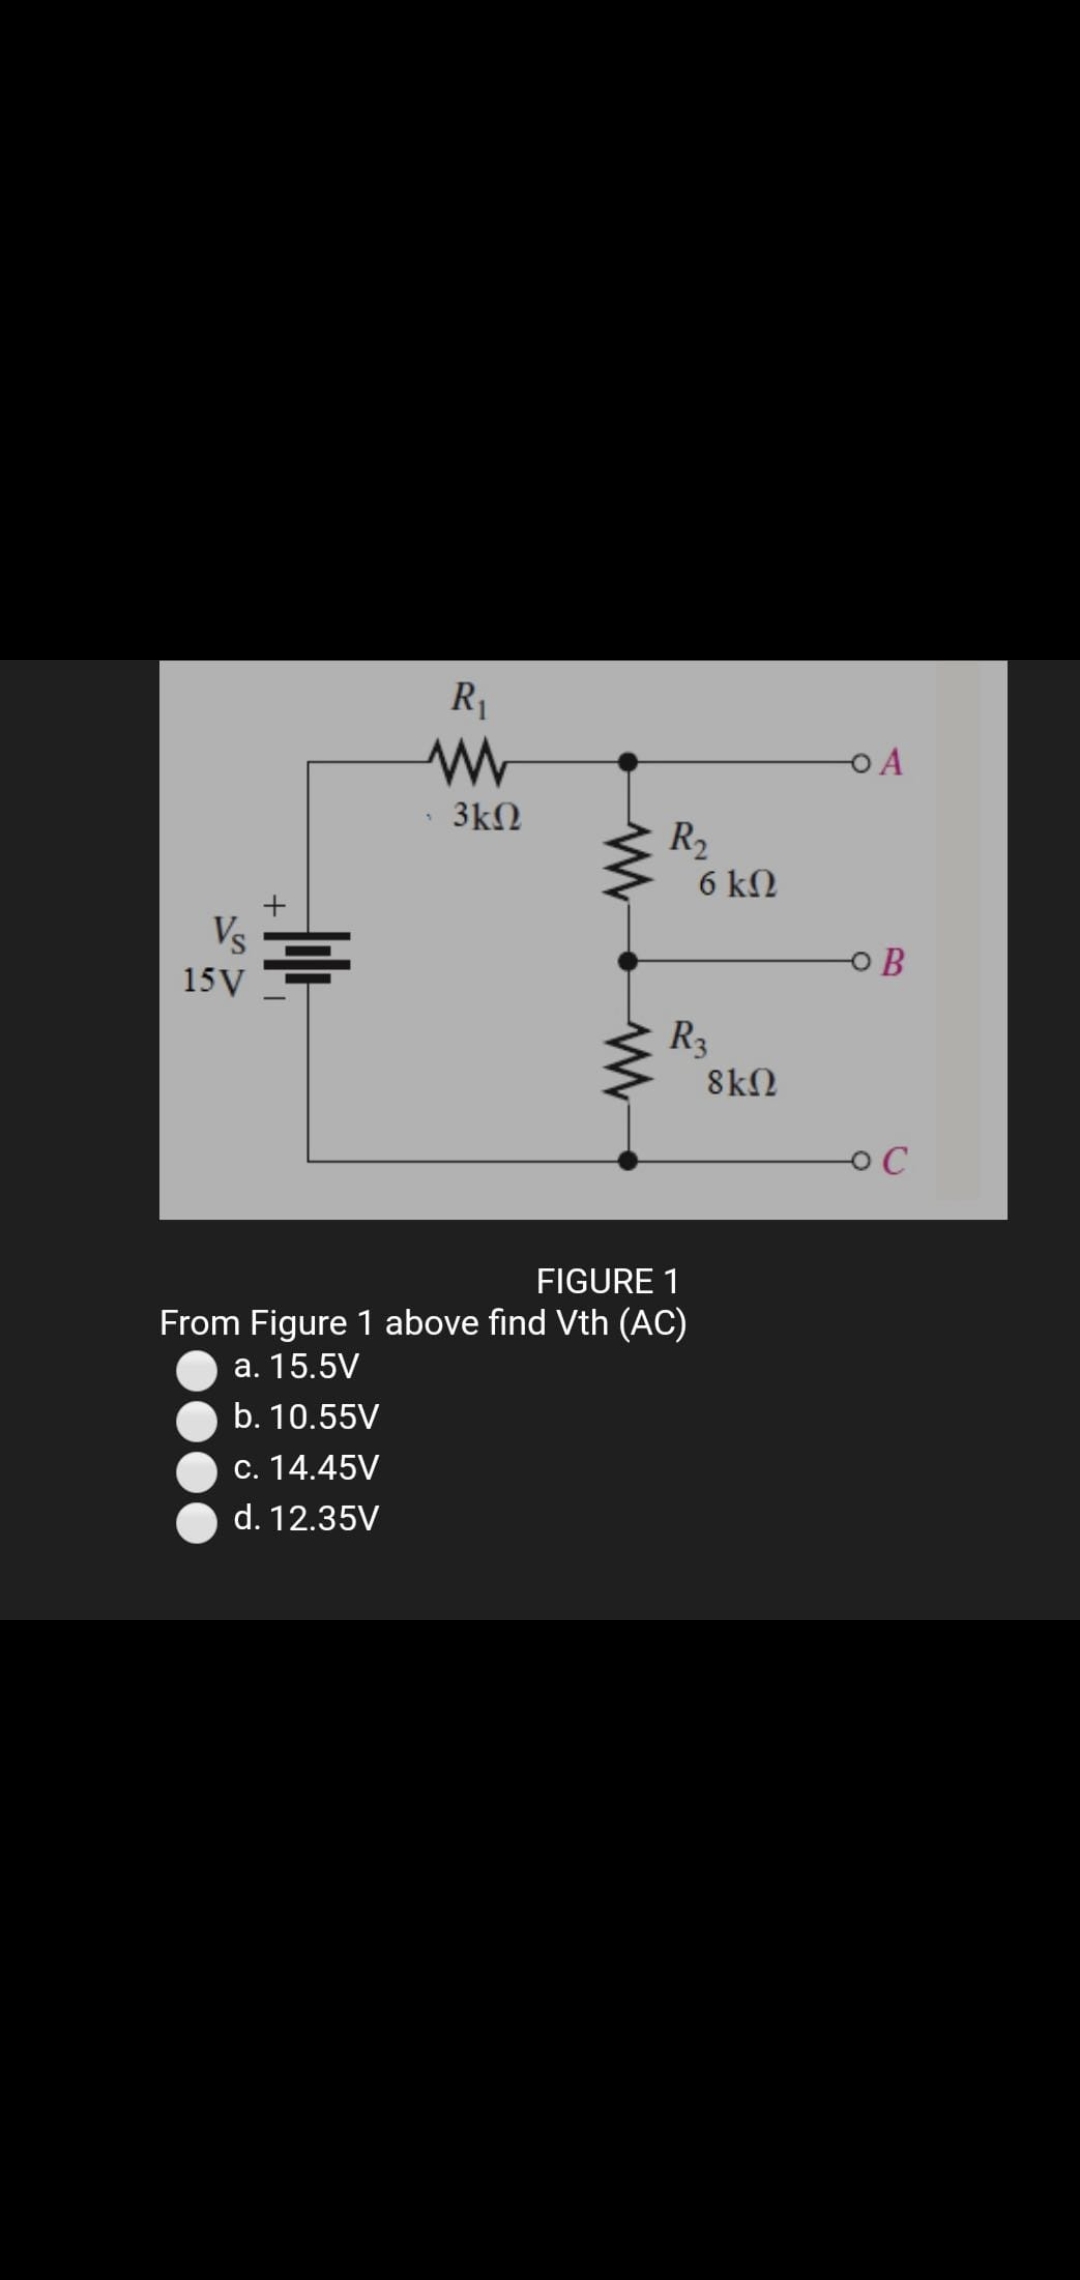 R
O A
3kN
R2
6 kN
Vs
o B
15V
R3
8kN
FIGURE 1
From Figure 1 above find Vth (AC)
a. 15.5V
b. 10.55V
c. 14.45V
d. 12.35V
